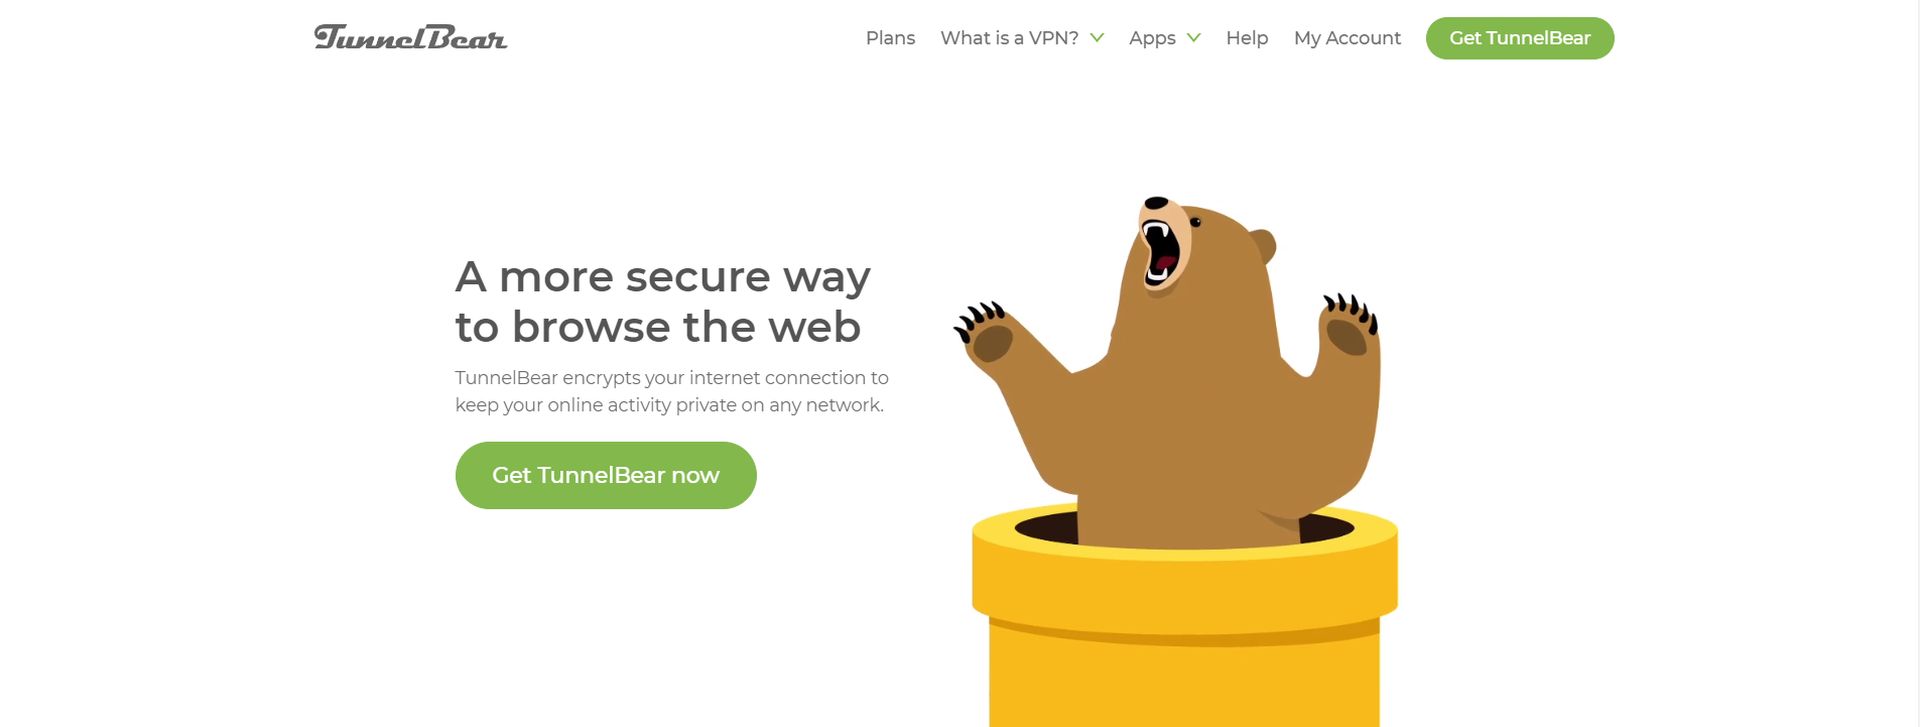 Rehber: Mac için en iyi ücretsiz VPN uygulamaları: Tunnel Bear AES-256 bit şifreleme ve günlük tutmama özellikleri içeriyor